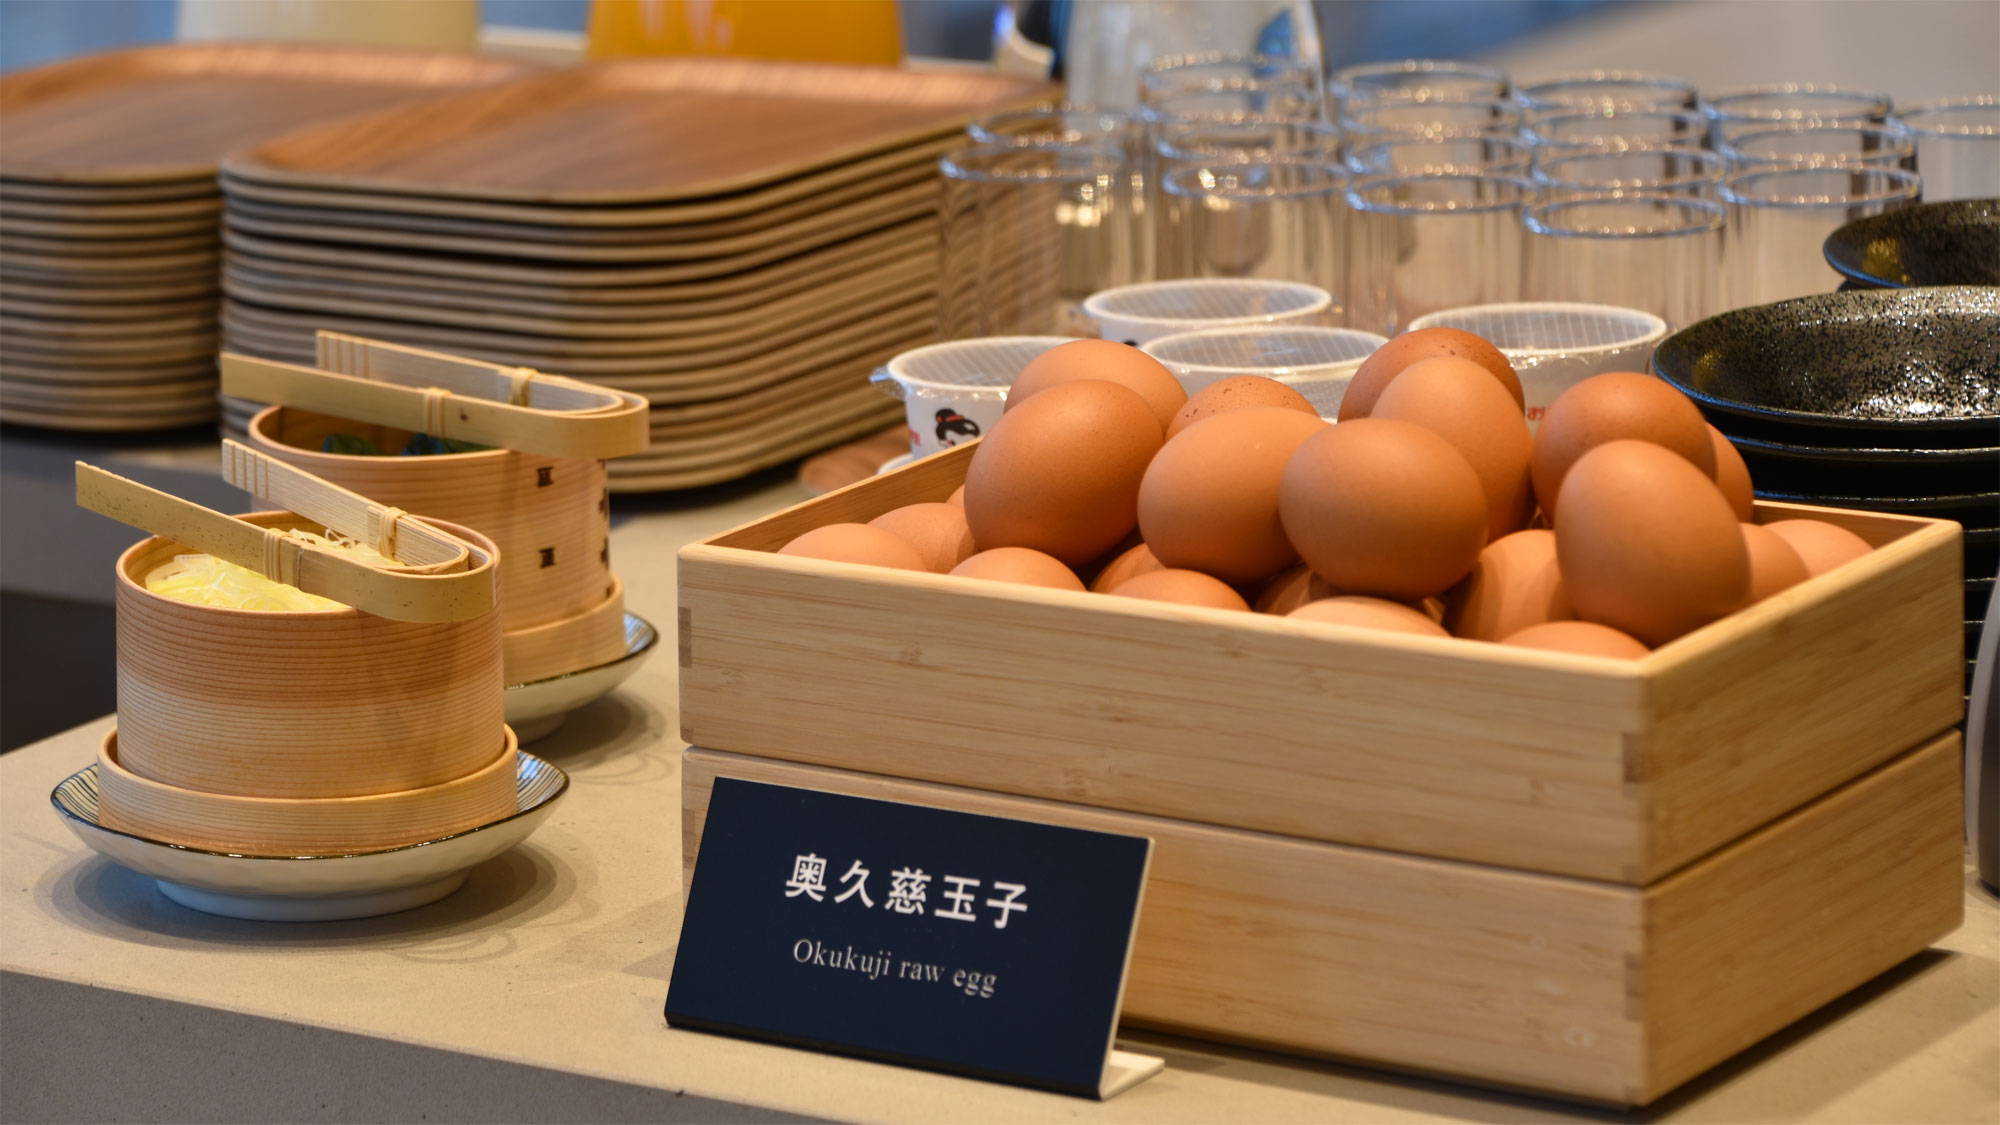 【朝食】高品質で栄養価の高い「奥久慈玉子」※仕入状況によりメニューは変更になる場合があります